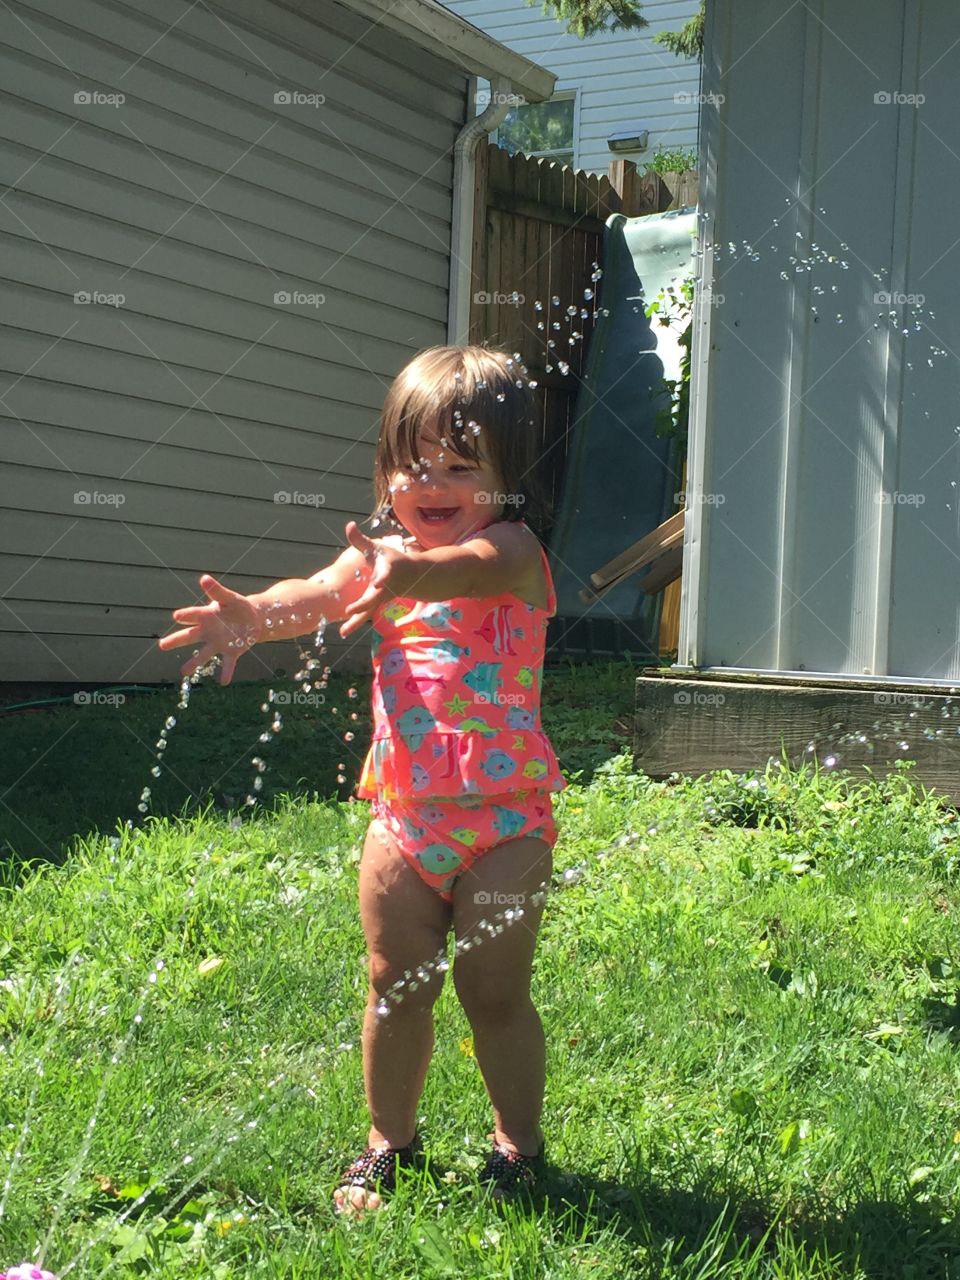 Water splashing on little girl at backyard